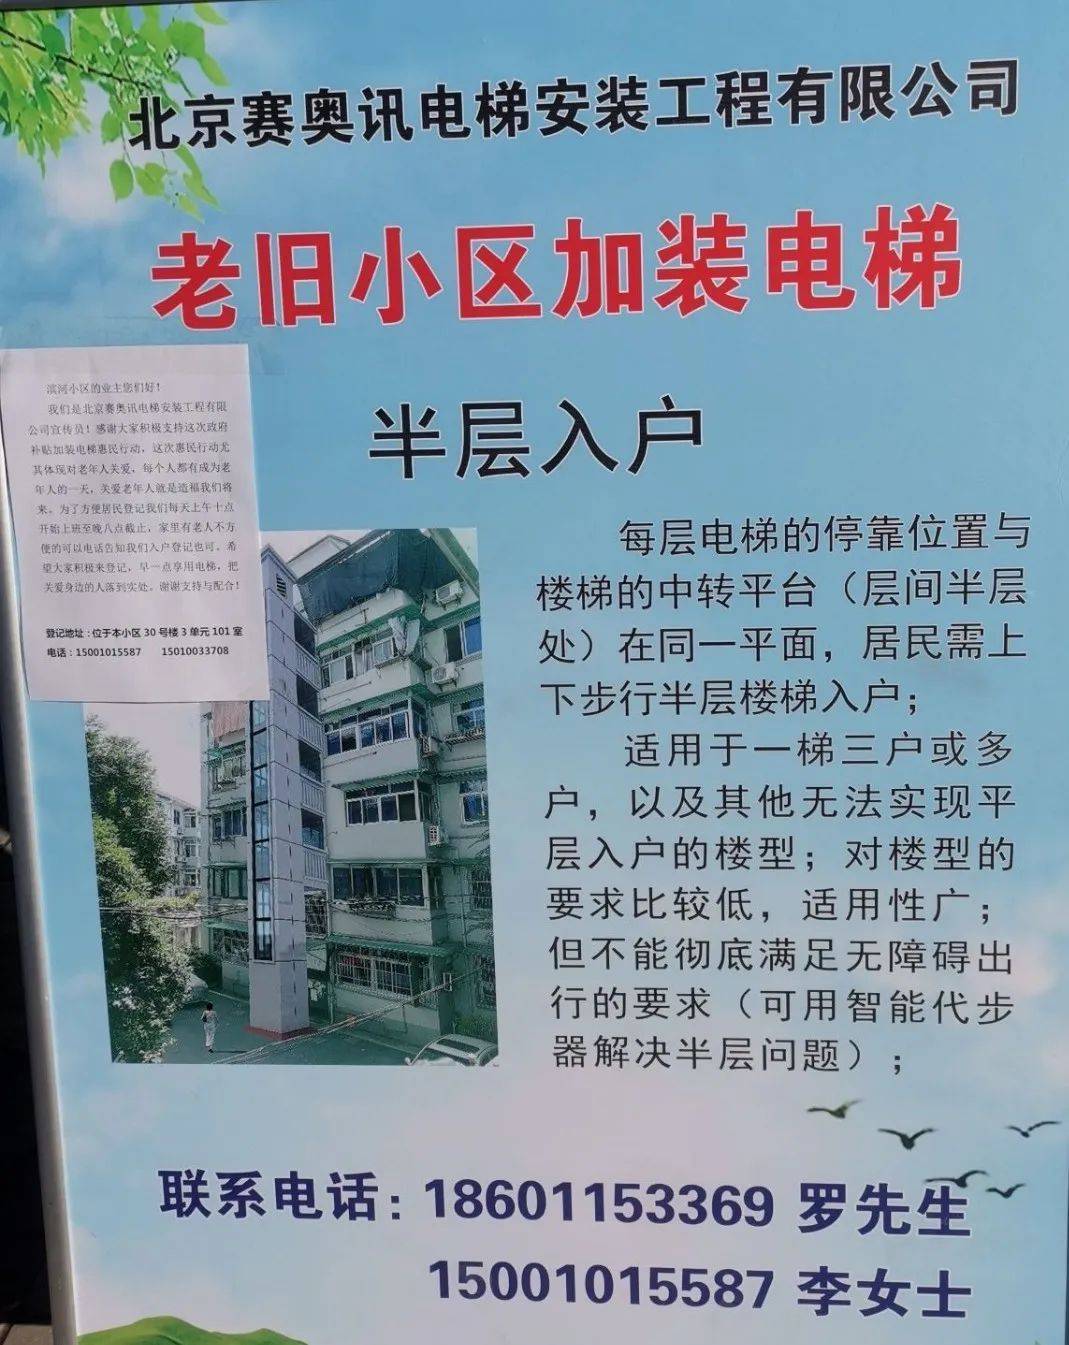 滨河小区已发布加装电梯宣传公告裕龙花园一区增设电梯通知前进花园一